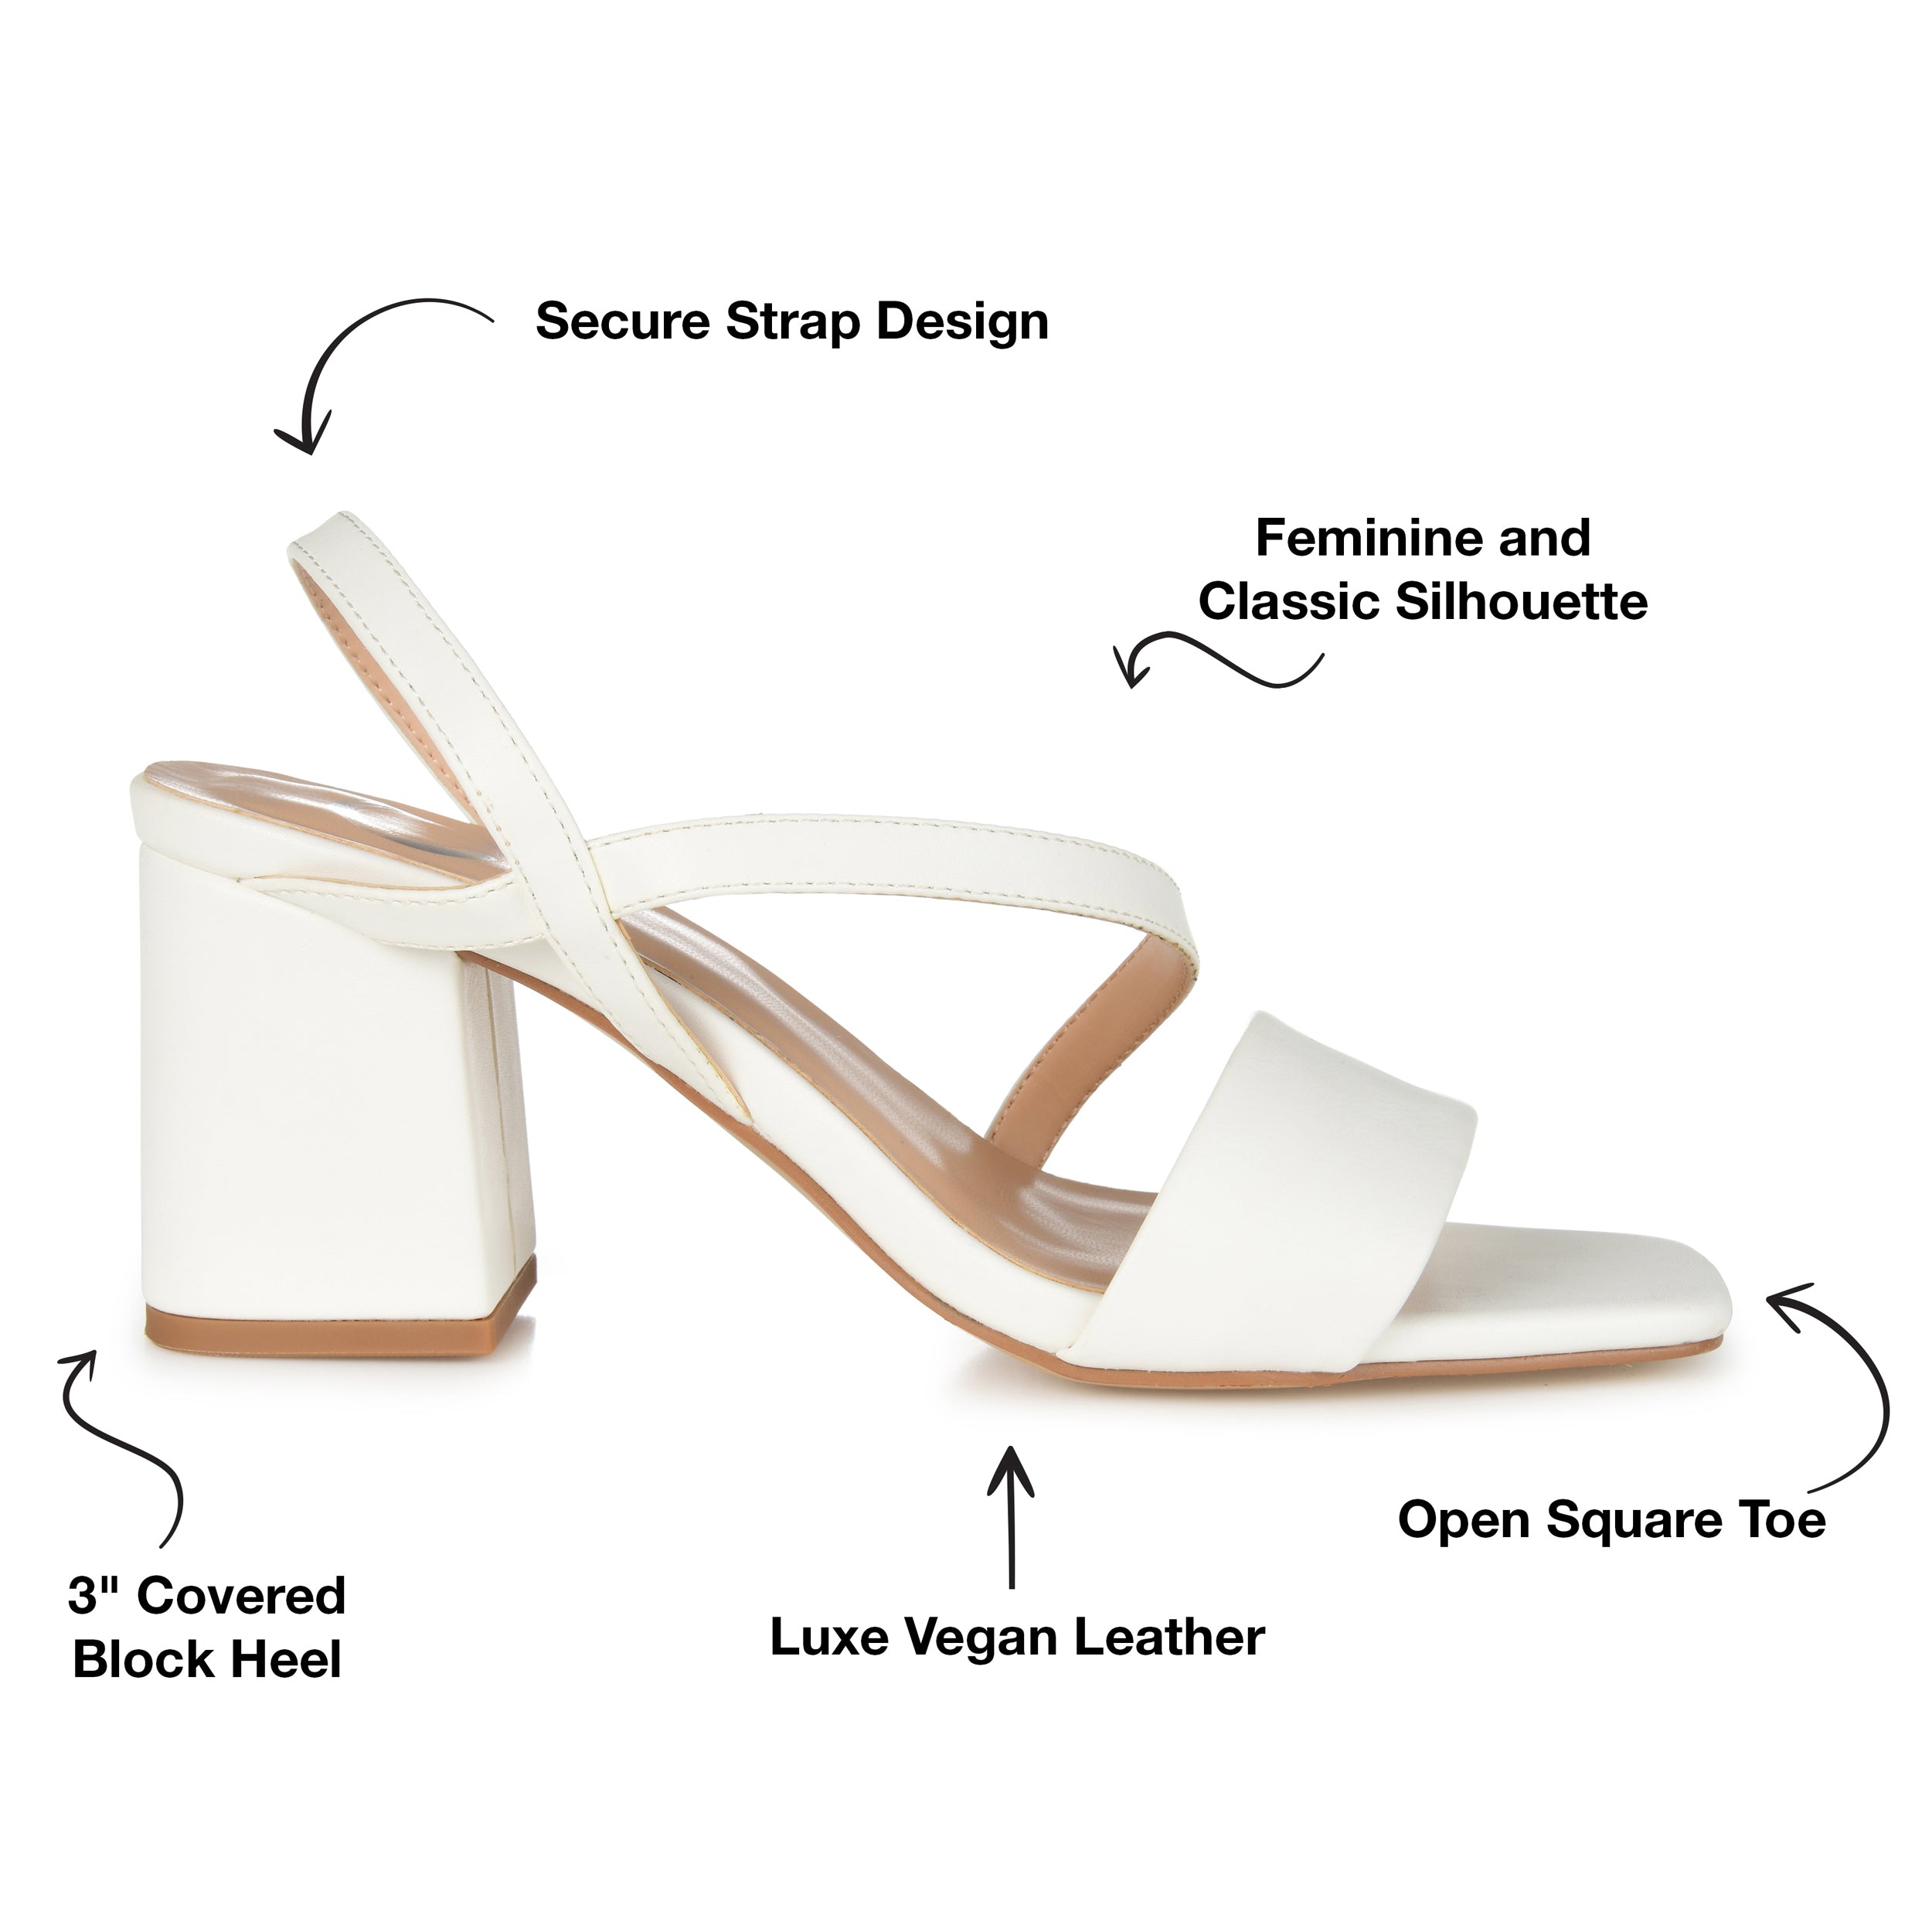 Statement Sandals - White, Fashion Nova, Shoes